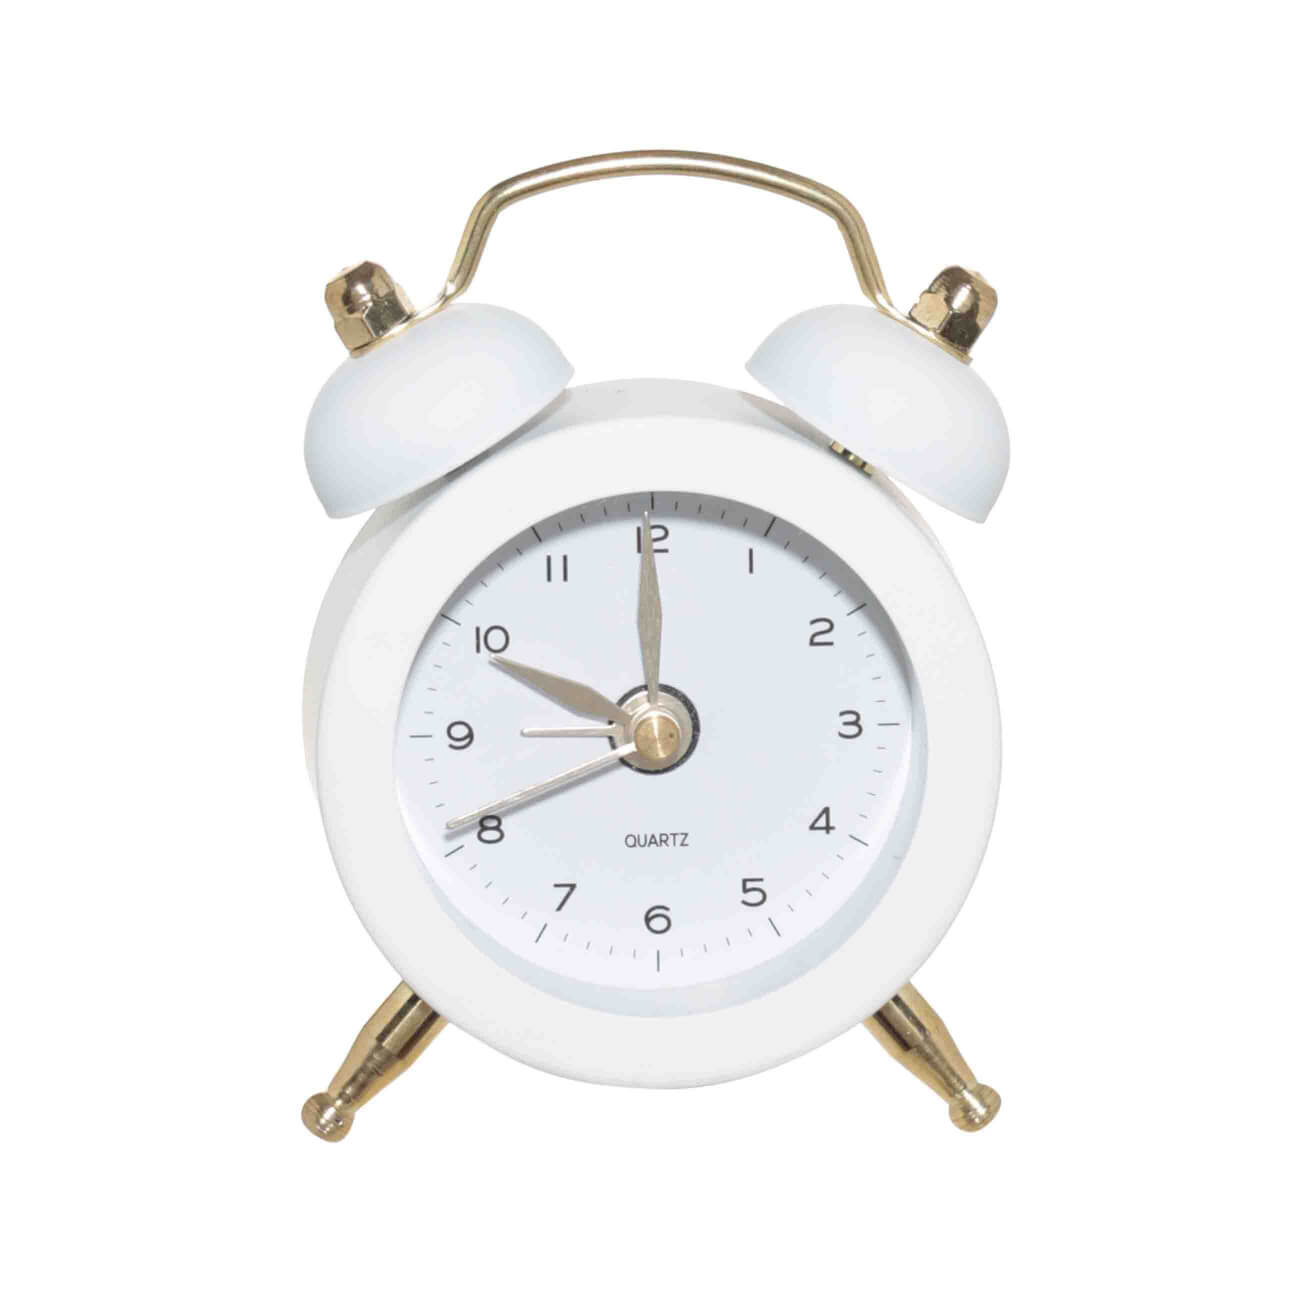 Часы-будильник, 8 см, на ножках, металл/стекло, круглые, бело-золотистые, Ретро, Dial